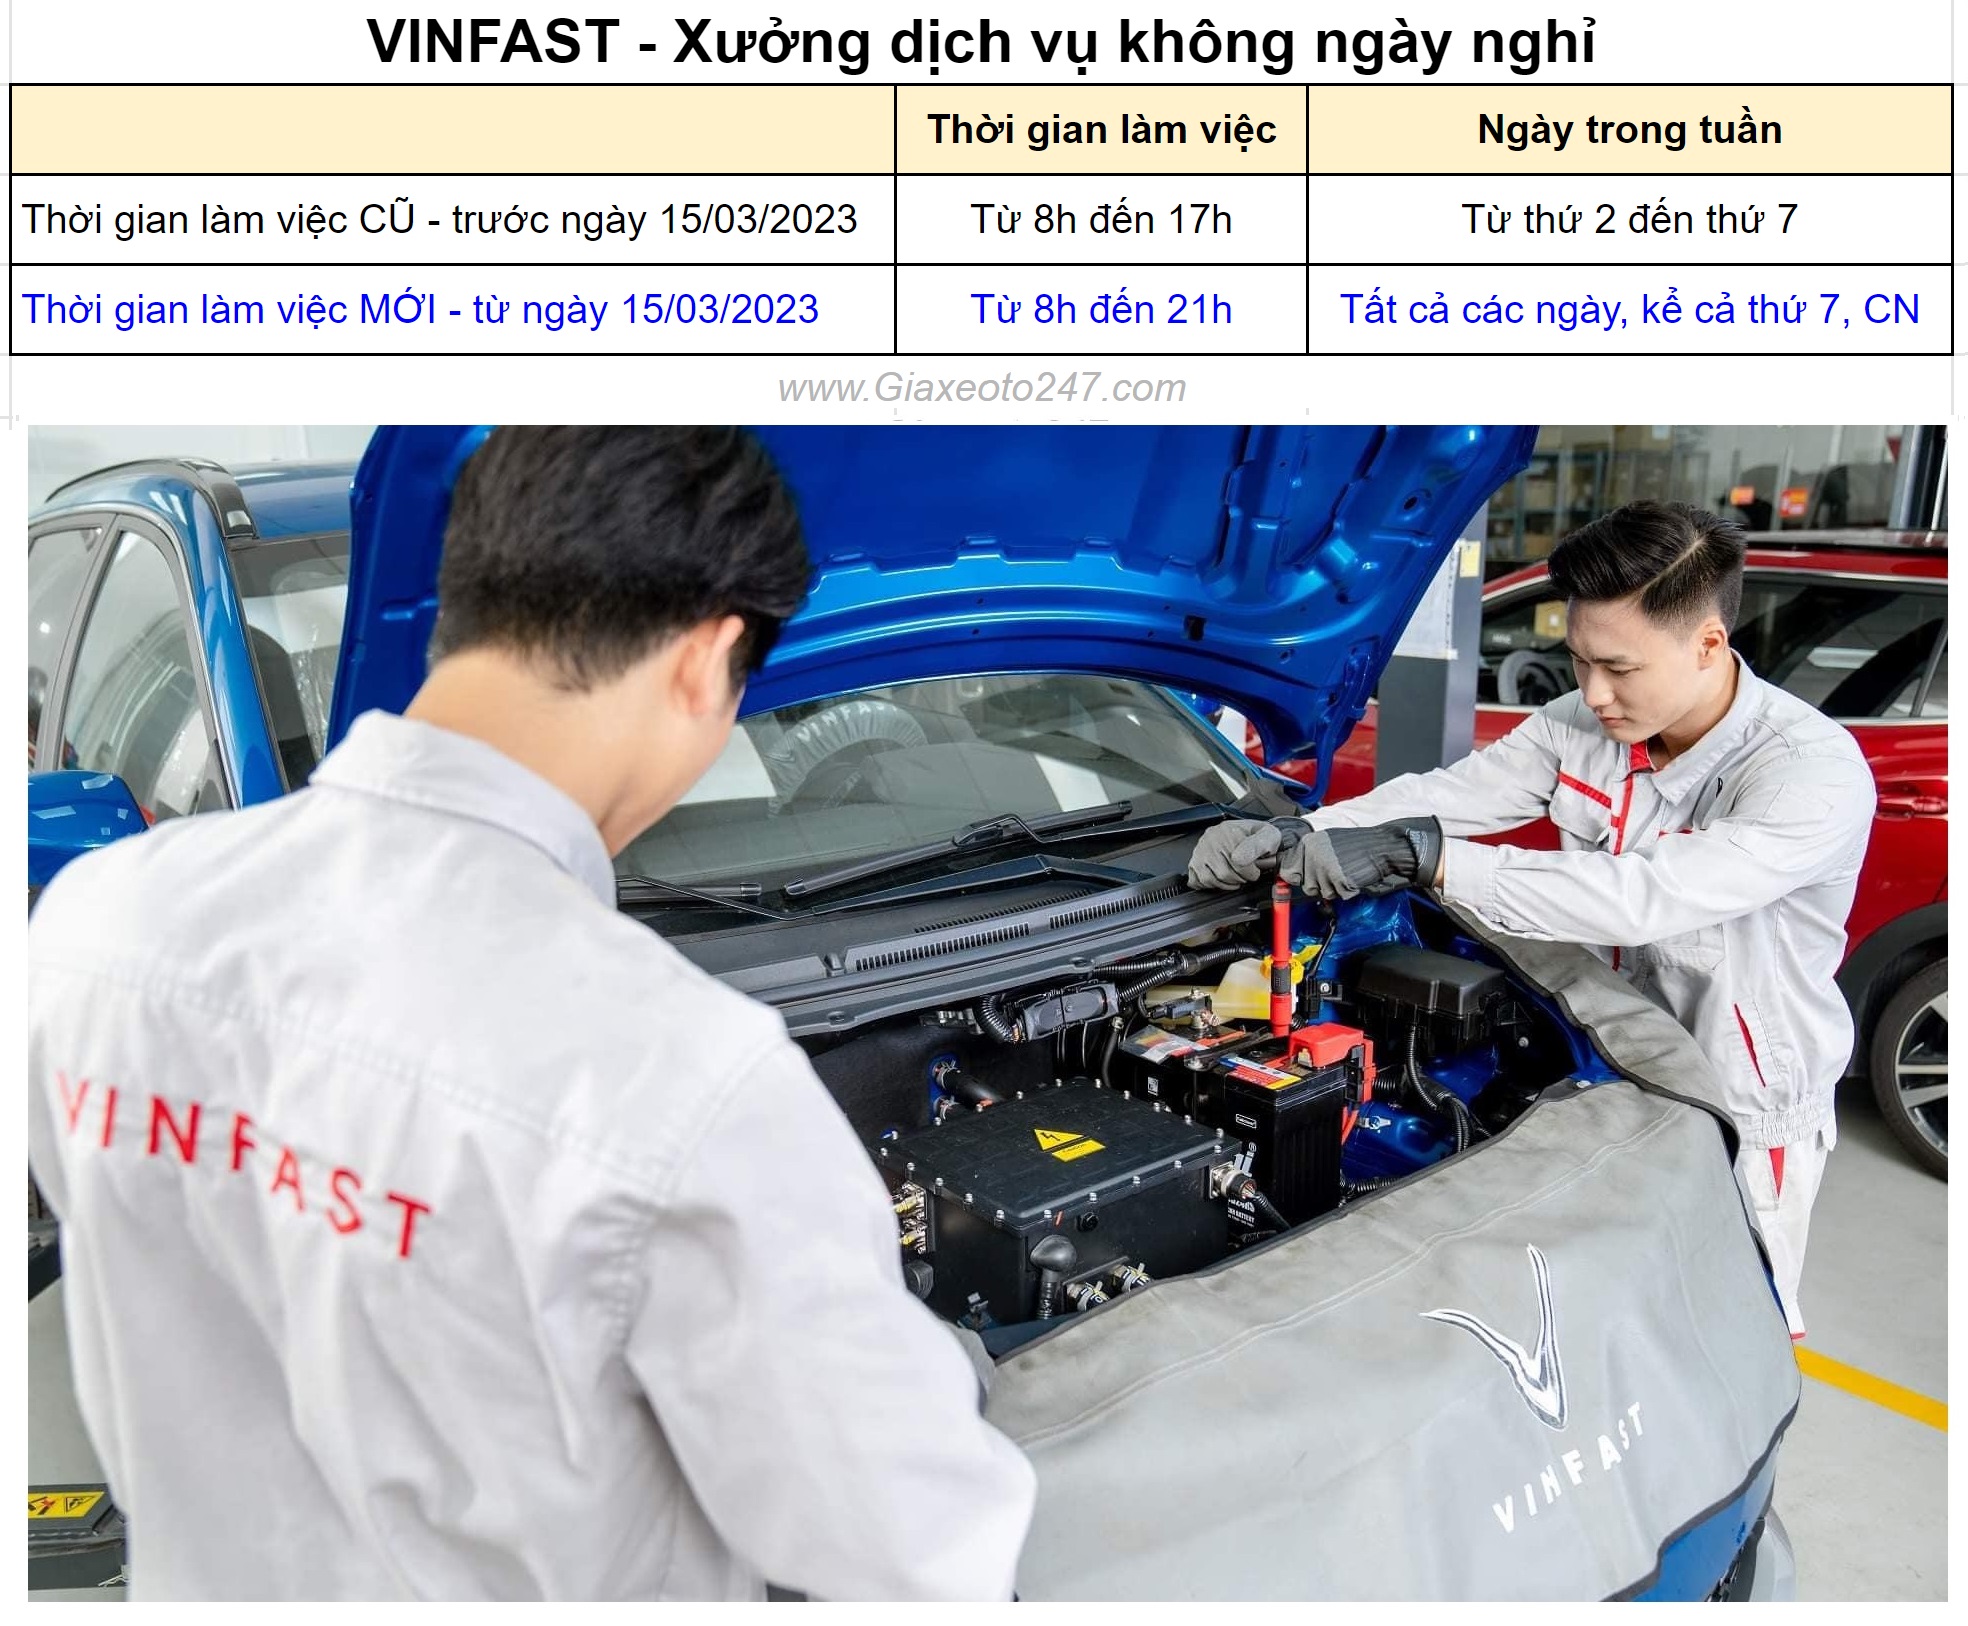 VinFas dich vu bao duong xe khong ngay nghi 1 - VinFast triển khai hệ thống "xưởng dịch vụ không ngày nghỉ"